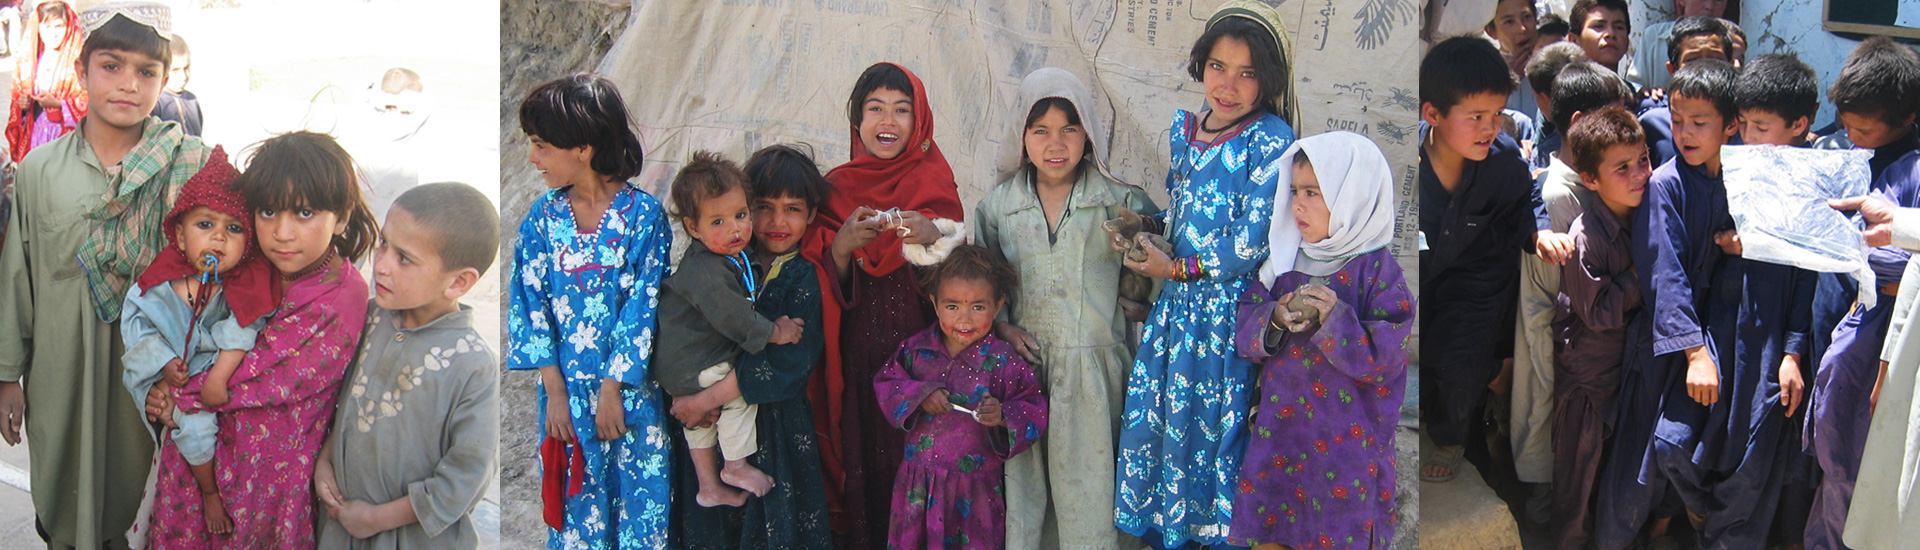 Ayuda para las familias afganas refugiadas en Pakistán - 2821